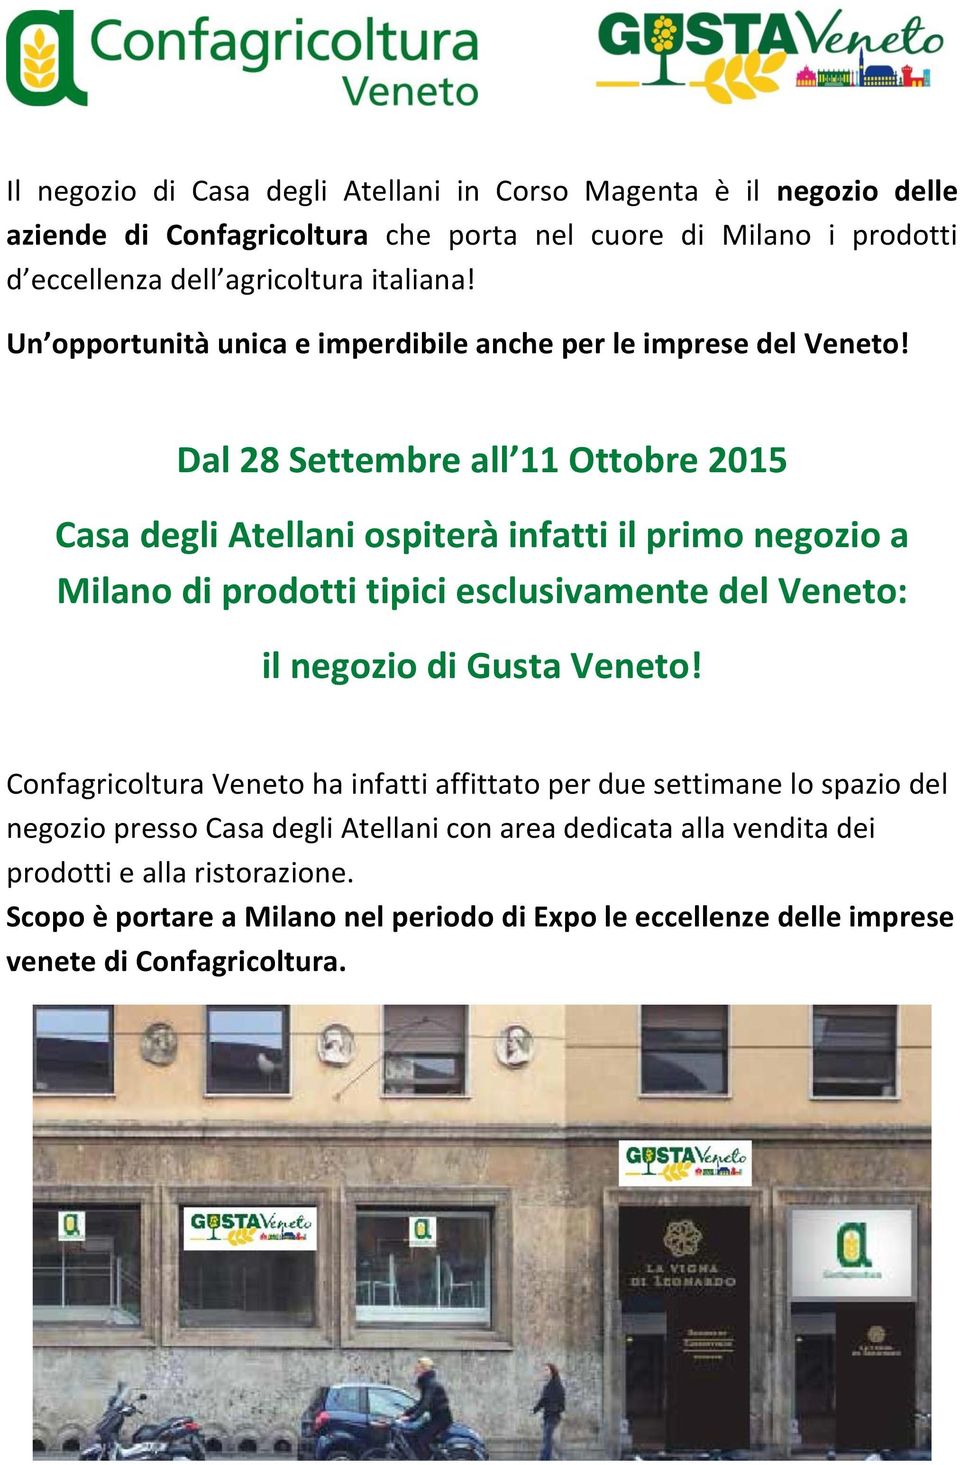 Dal 28 Settembre all 11 Ottobre 2015 Casa degli Atellani ospiterà infatti il primo negozio a Milano di prodotti tipici esclusivamente del Veneto: il negozio di Gusta Veneto!